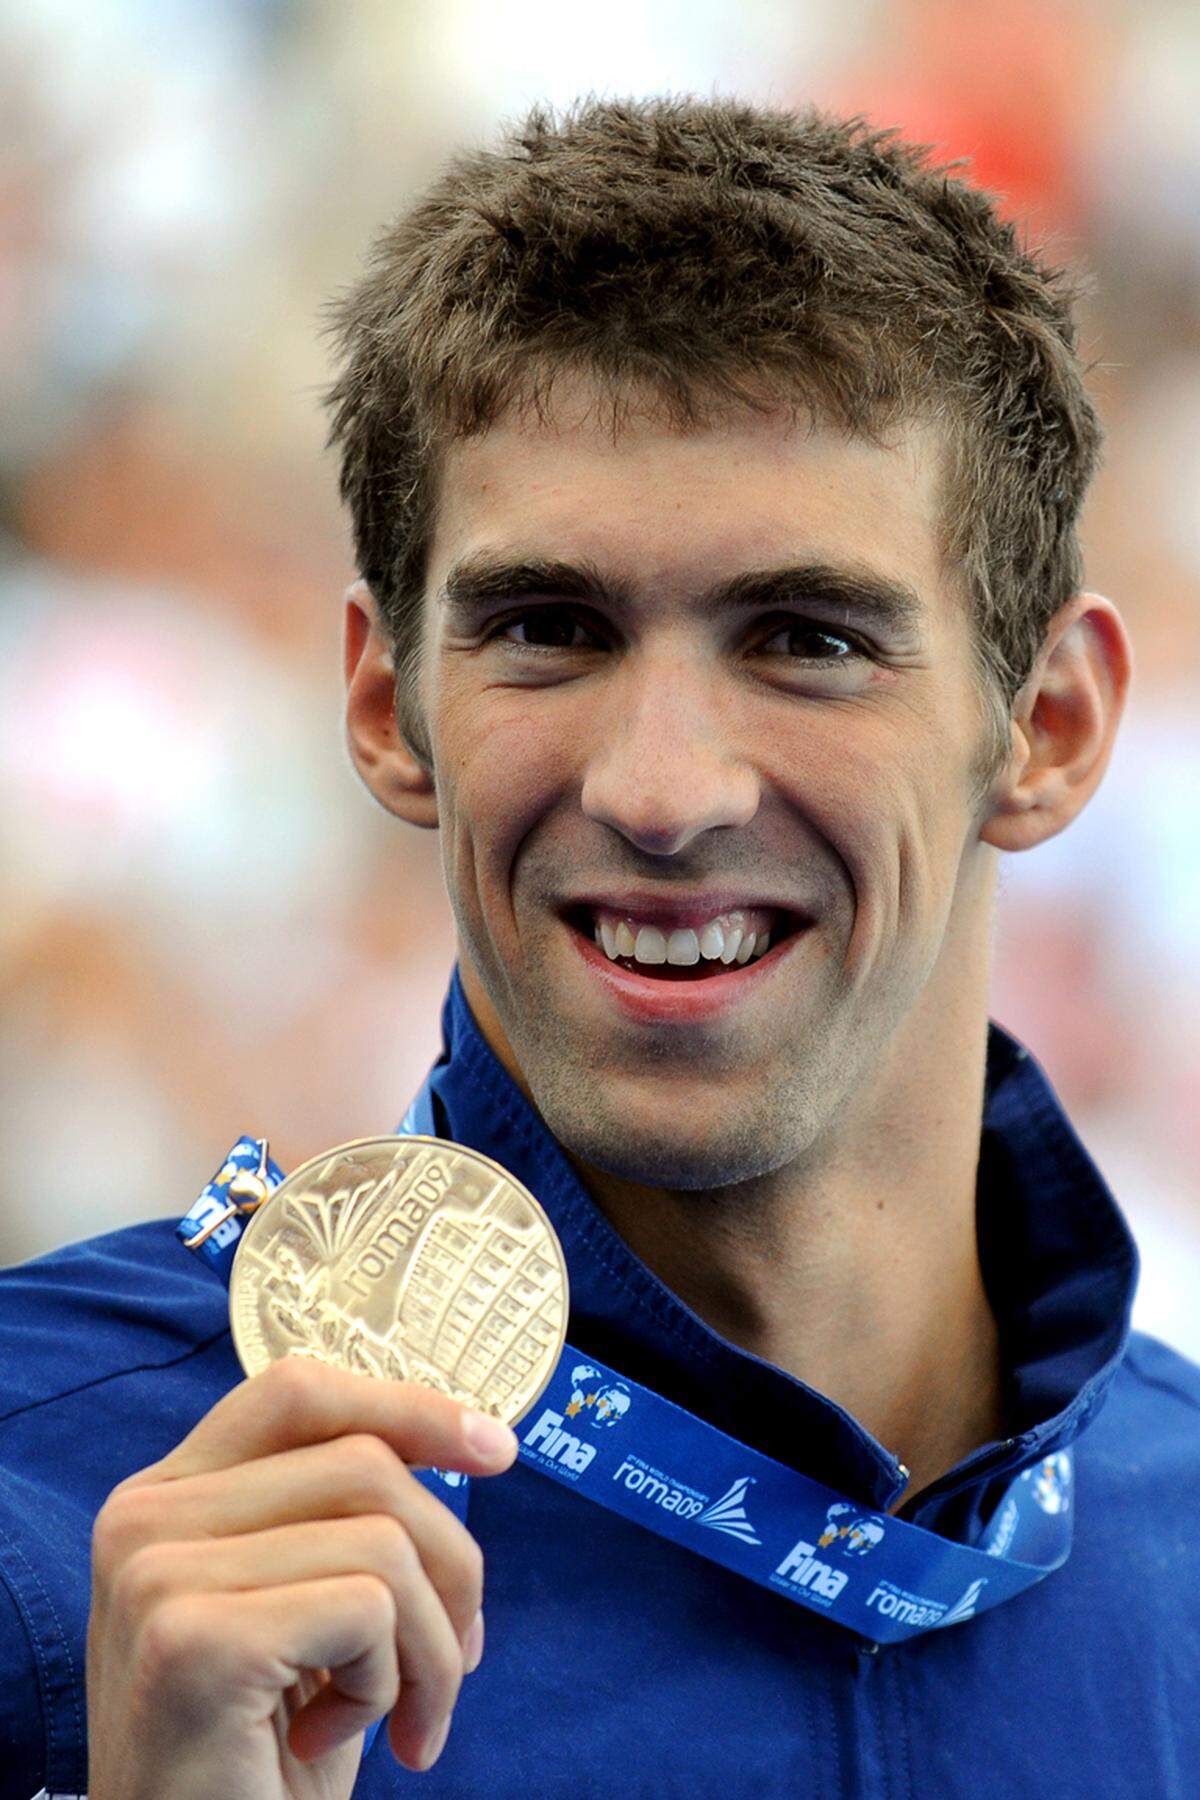 Nach mehrmonatiger Wettkampfpause kehrte Phelps rechtzeitig in die Vorbereitung auf die WM 2009 in Rom zurück. Sein Comeback vergoldete er mit fünf Siegen: Dreimal Gold mit der Staffel sowie über 200 m und 100 m Delfin, wobei er als erster Mensch unter 50 Sekunden (49,82 s) blieb.